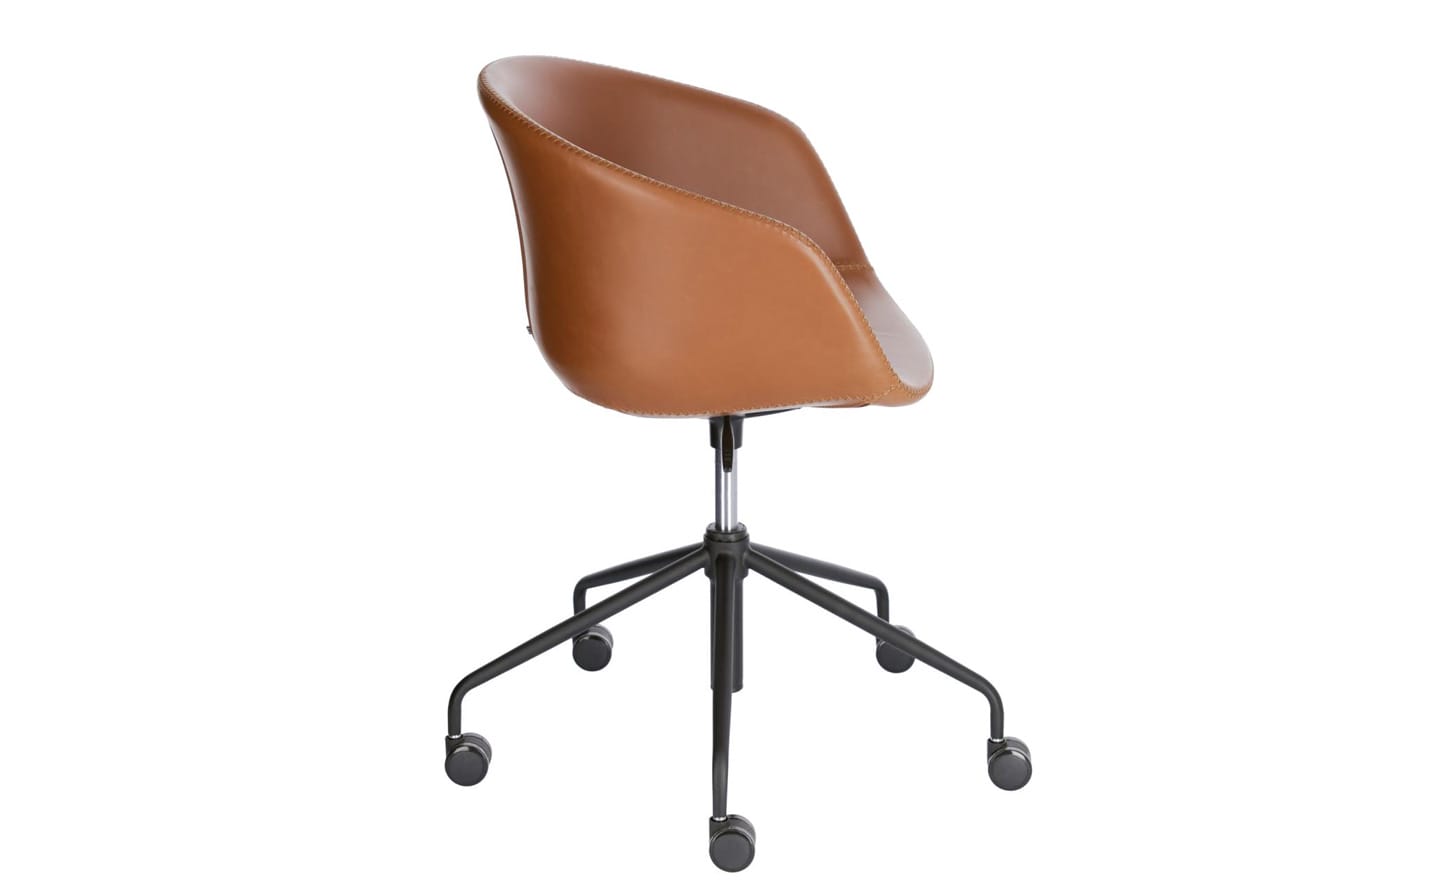 Cadeira de Escritório Yvette Castanho - CC5171U10. Design elegante com assento em pele sintética e ajustes de altura. Perfeita para adicionar estilo e conforto ao seu escritório. Moveistore